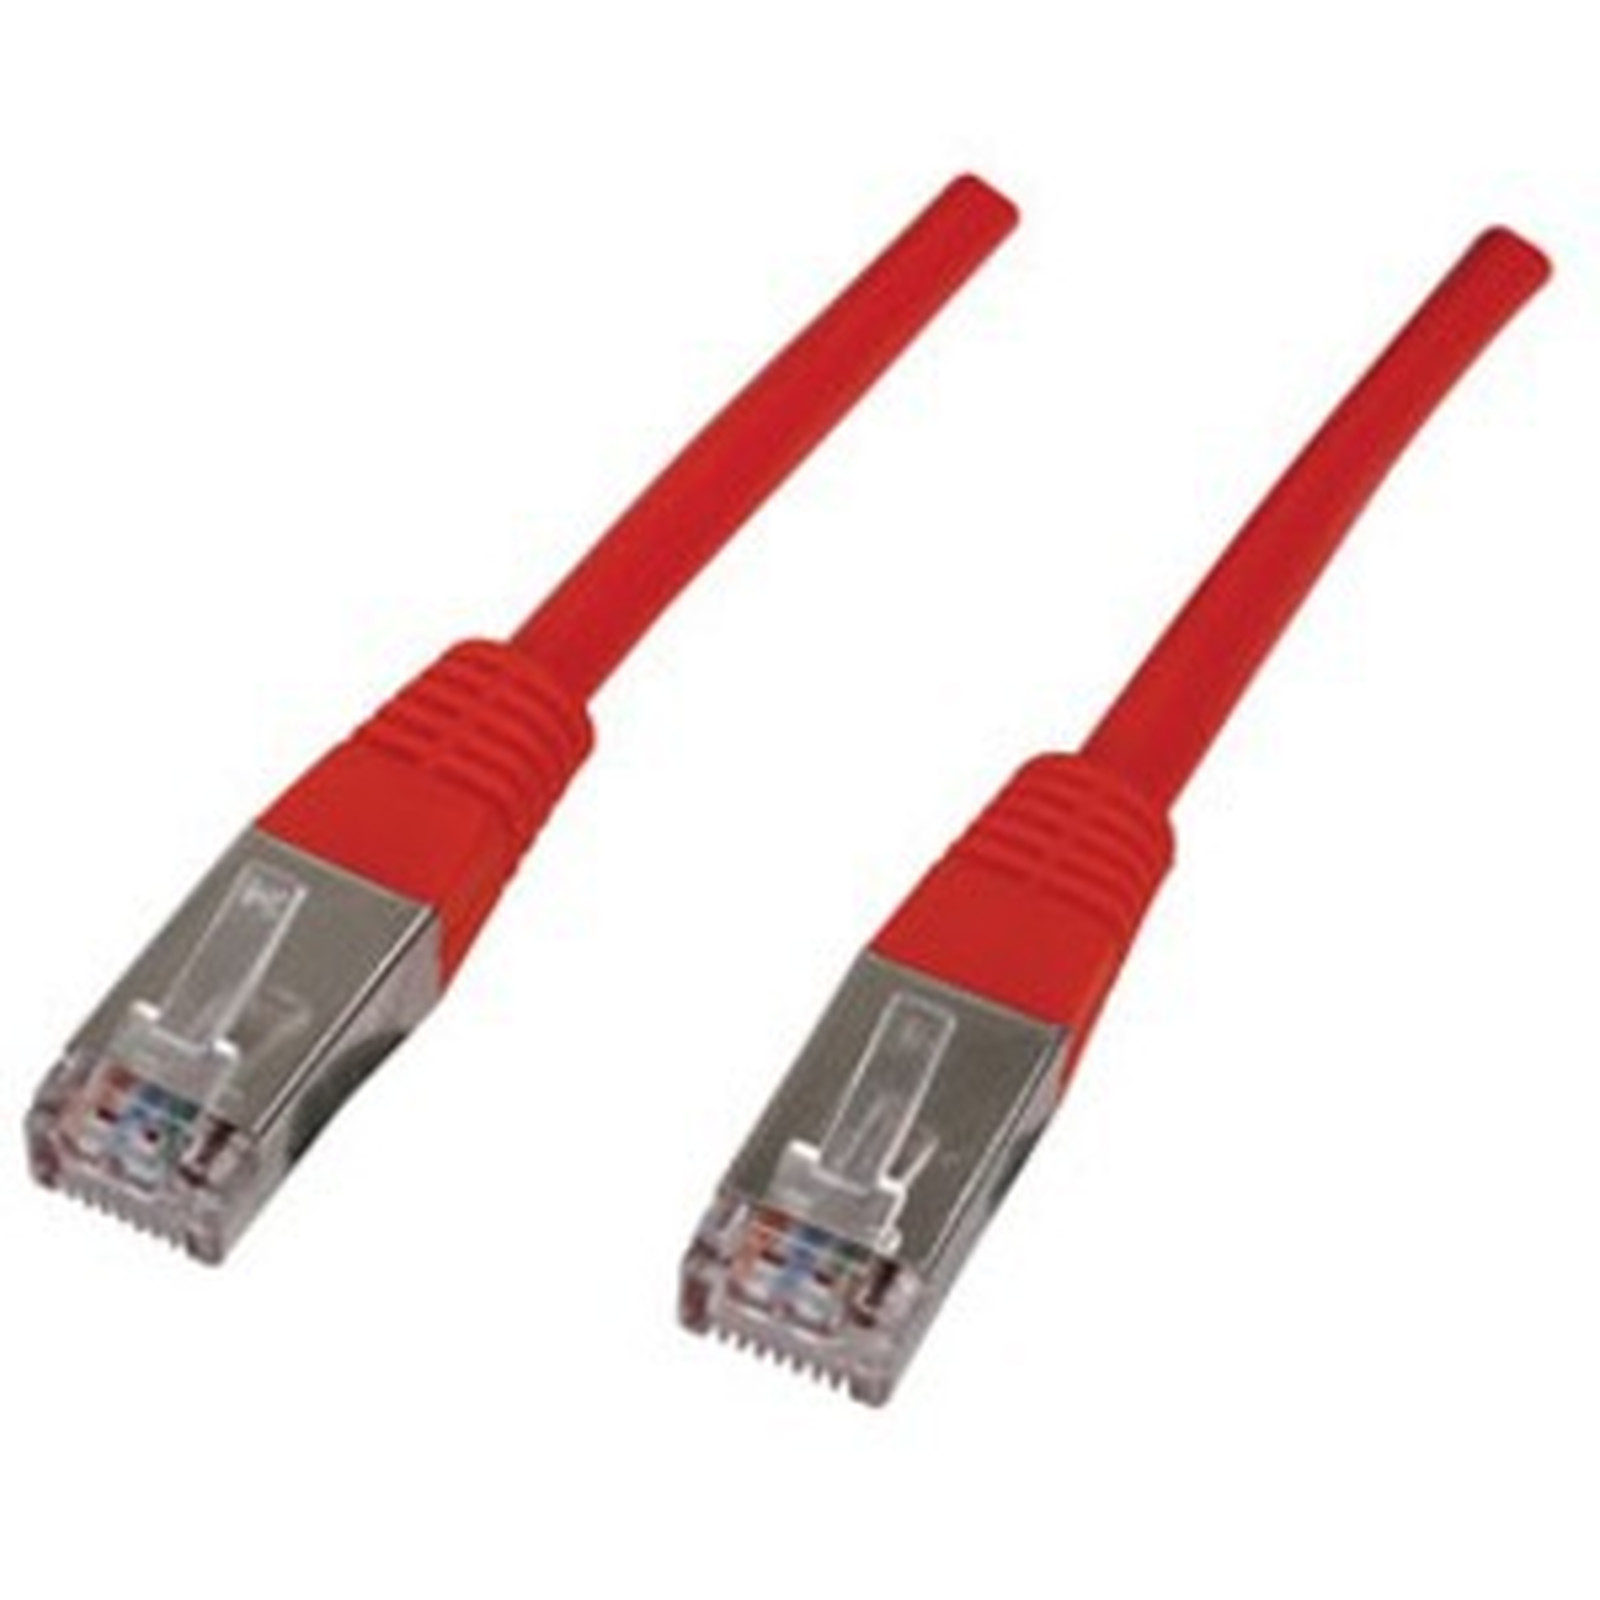 Cable RJ45 categorie 6 F/UTP 0.5 m (Rouge) - Cable RJ45 Generique